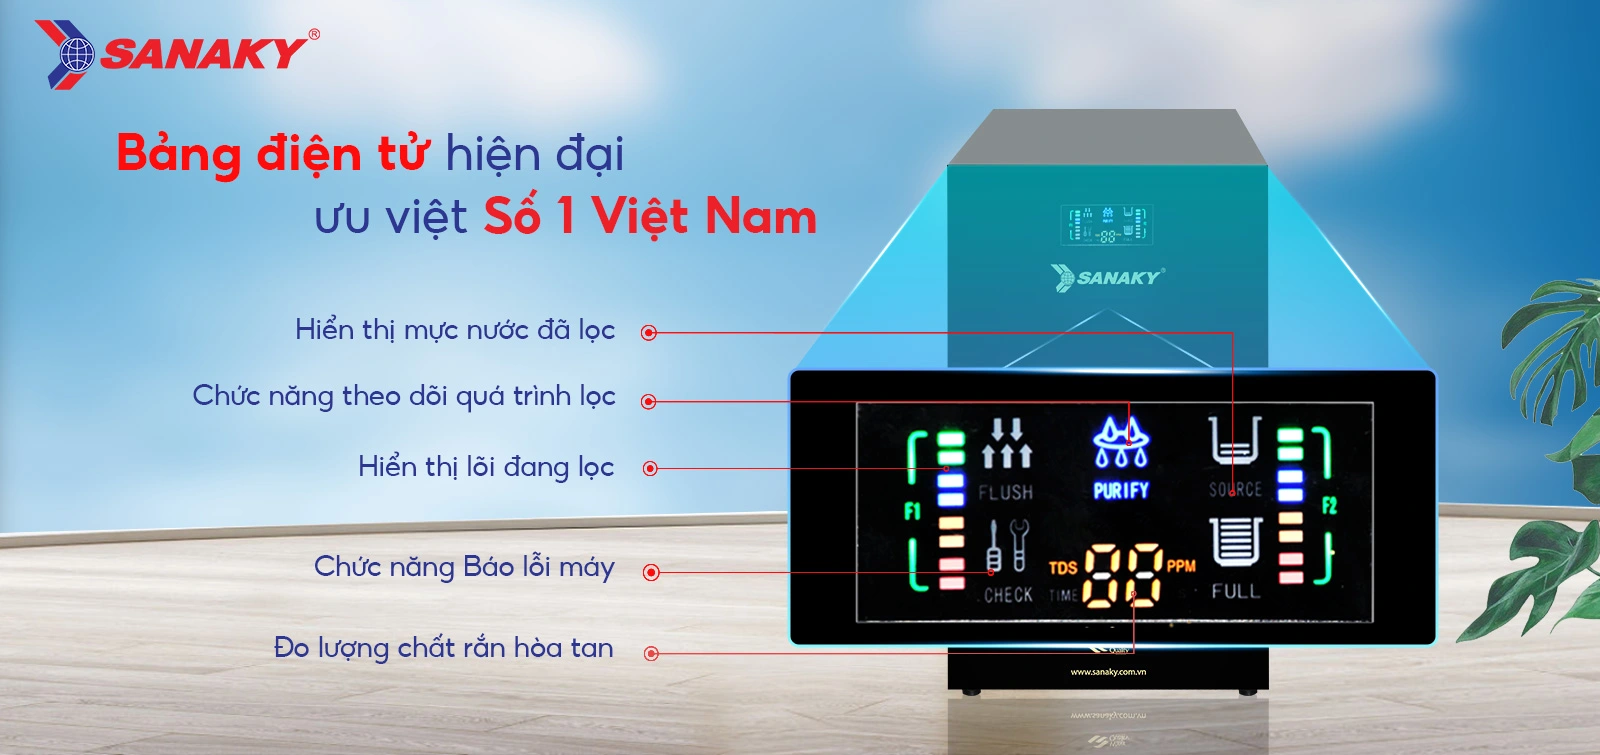 Bảng điện tử hiện đại ưu việt số 1 Việt Nam